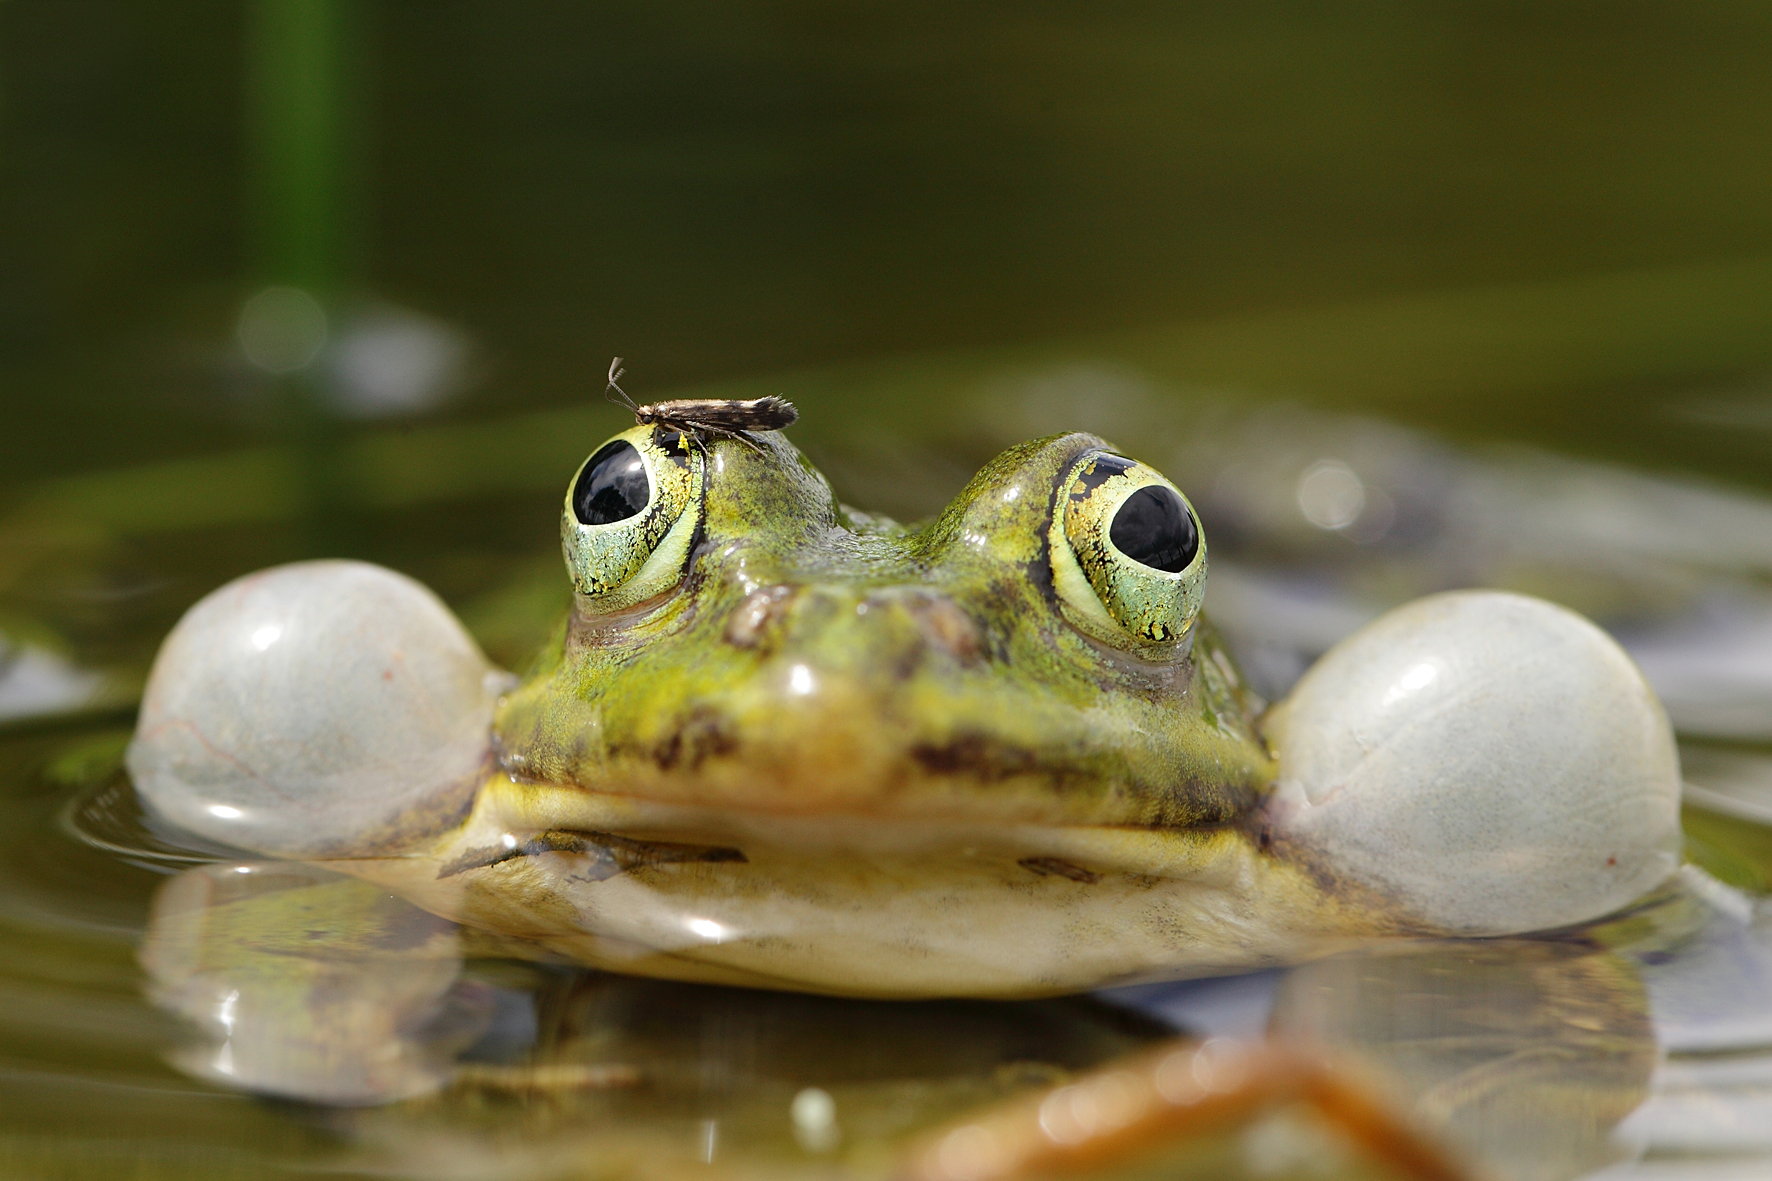 żaba z wydętymi policzkami wychyla się ponad wodę.